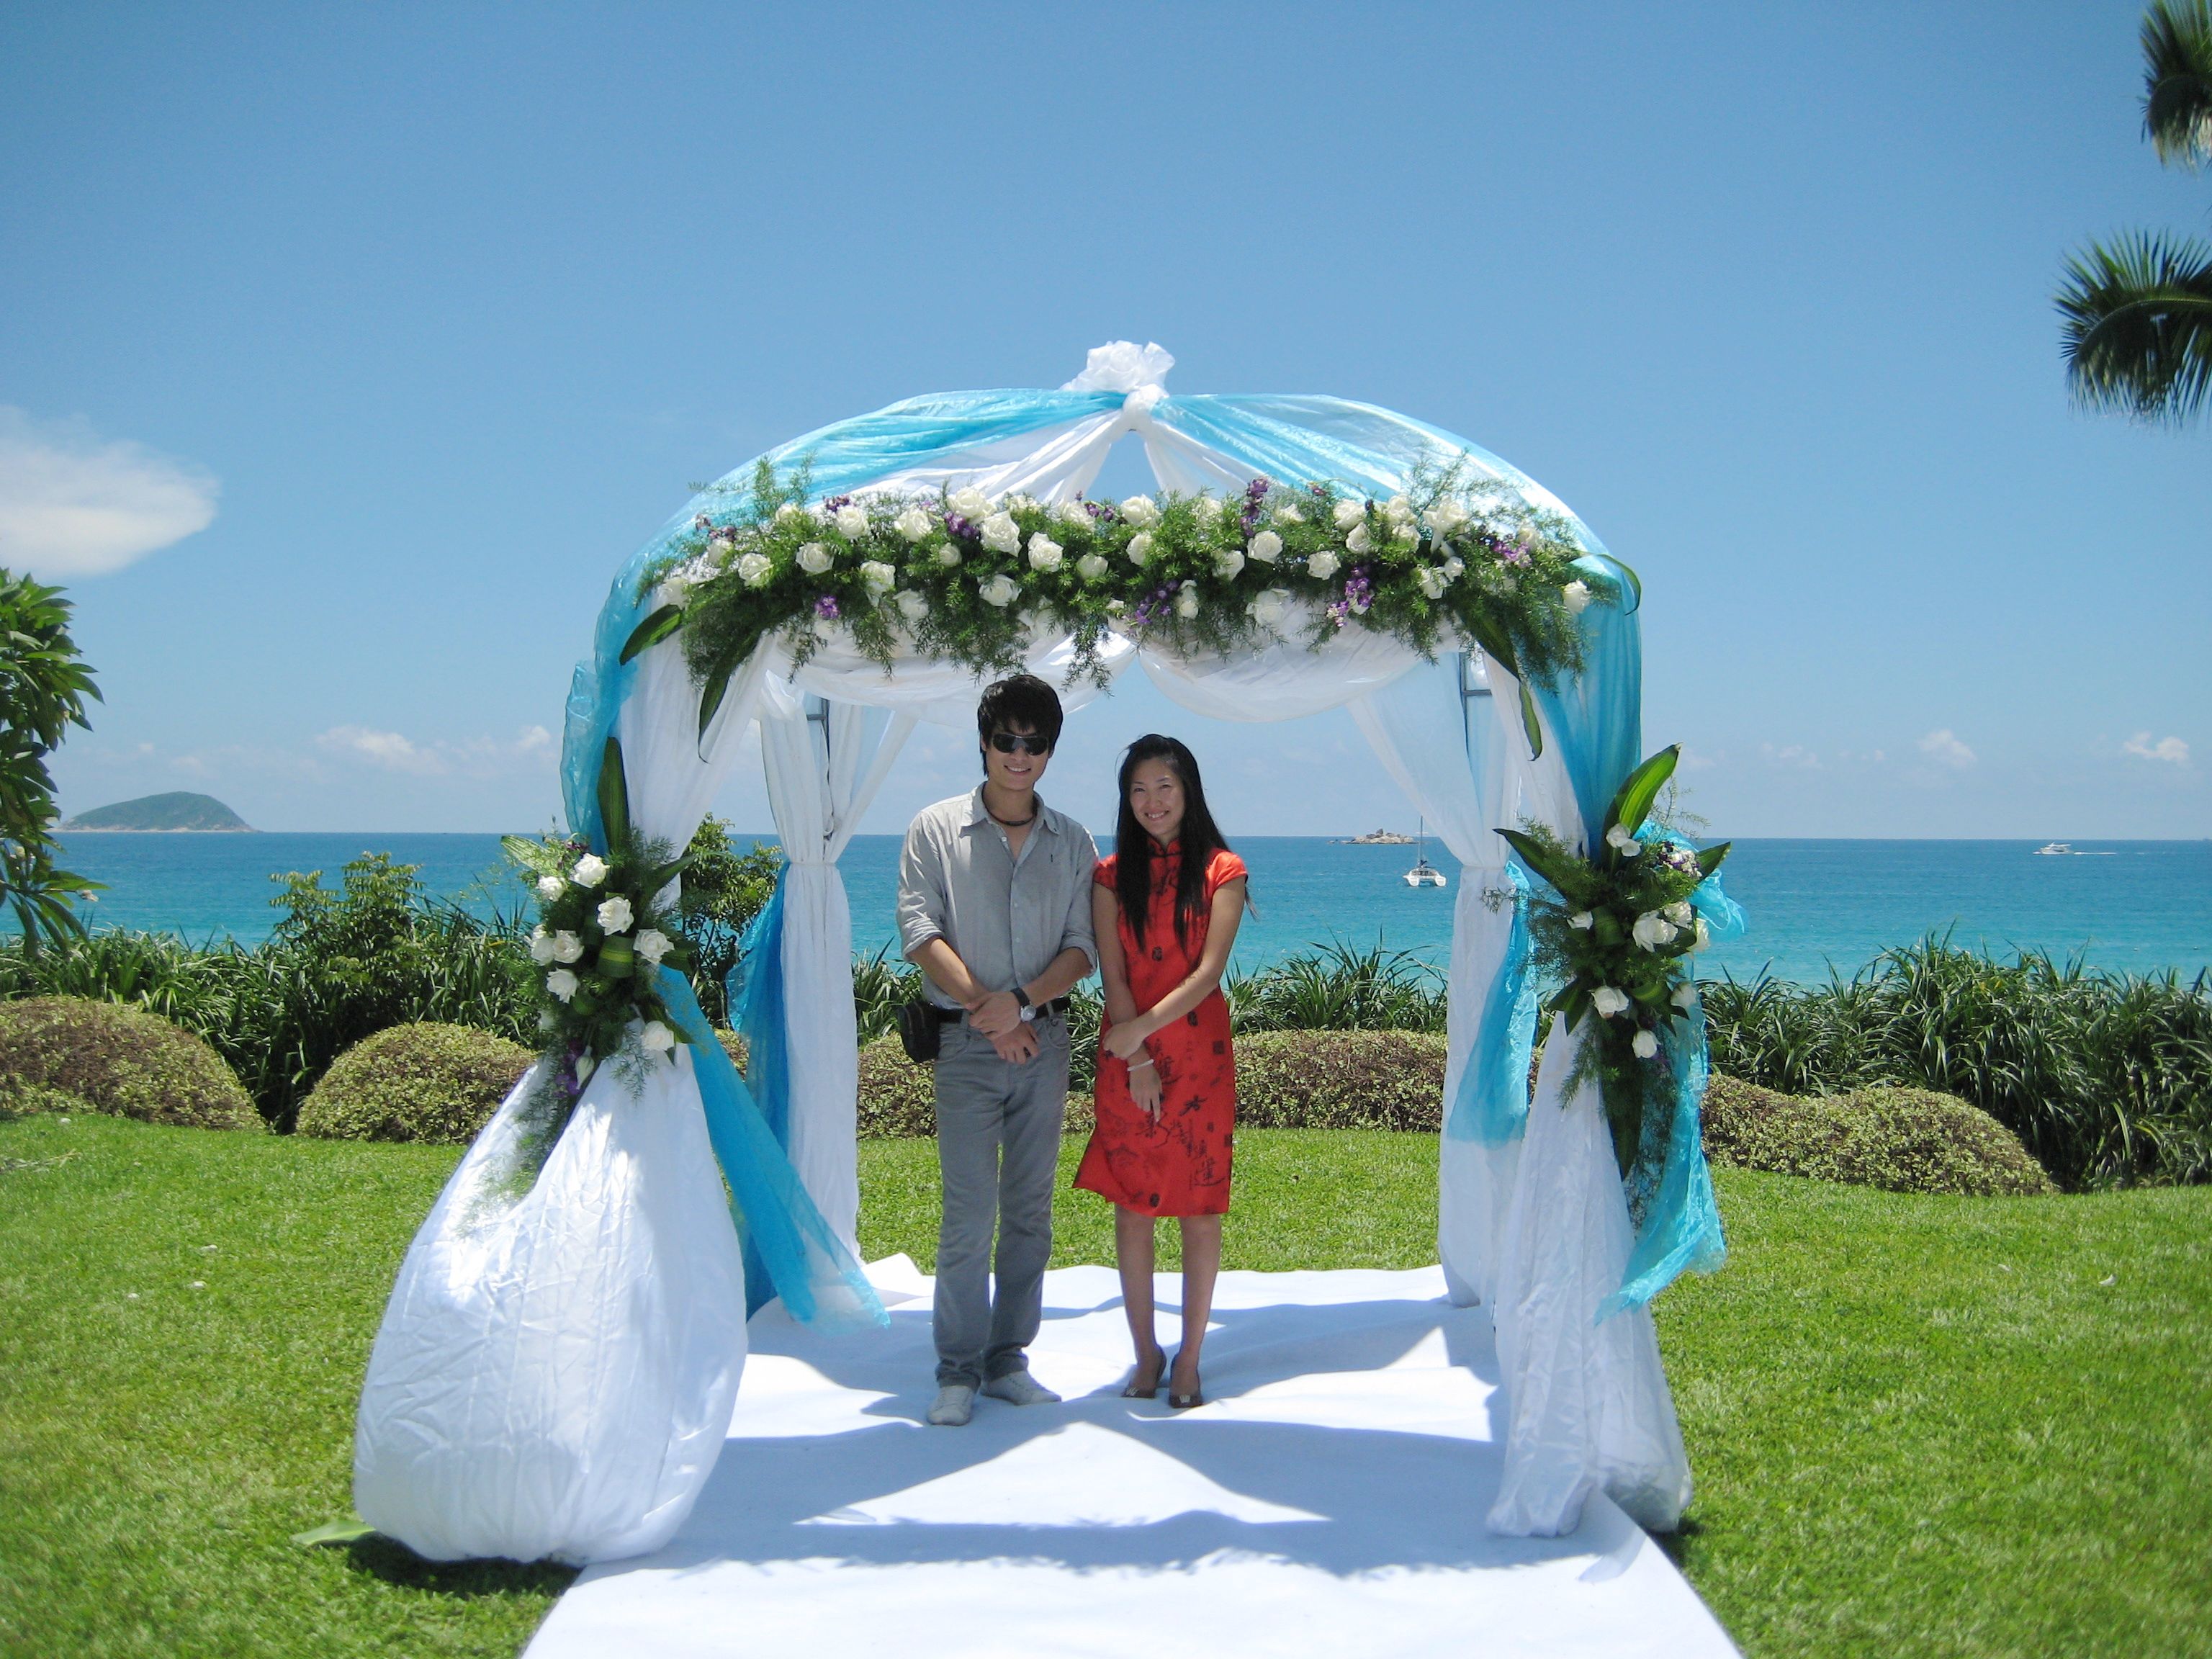 旅行心情记录:海边婚礼